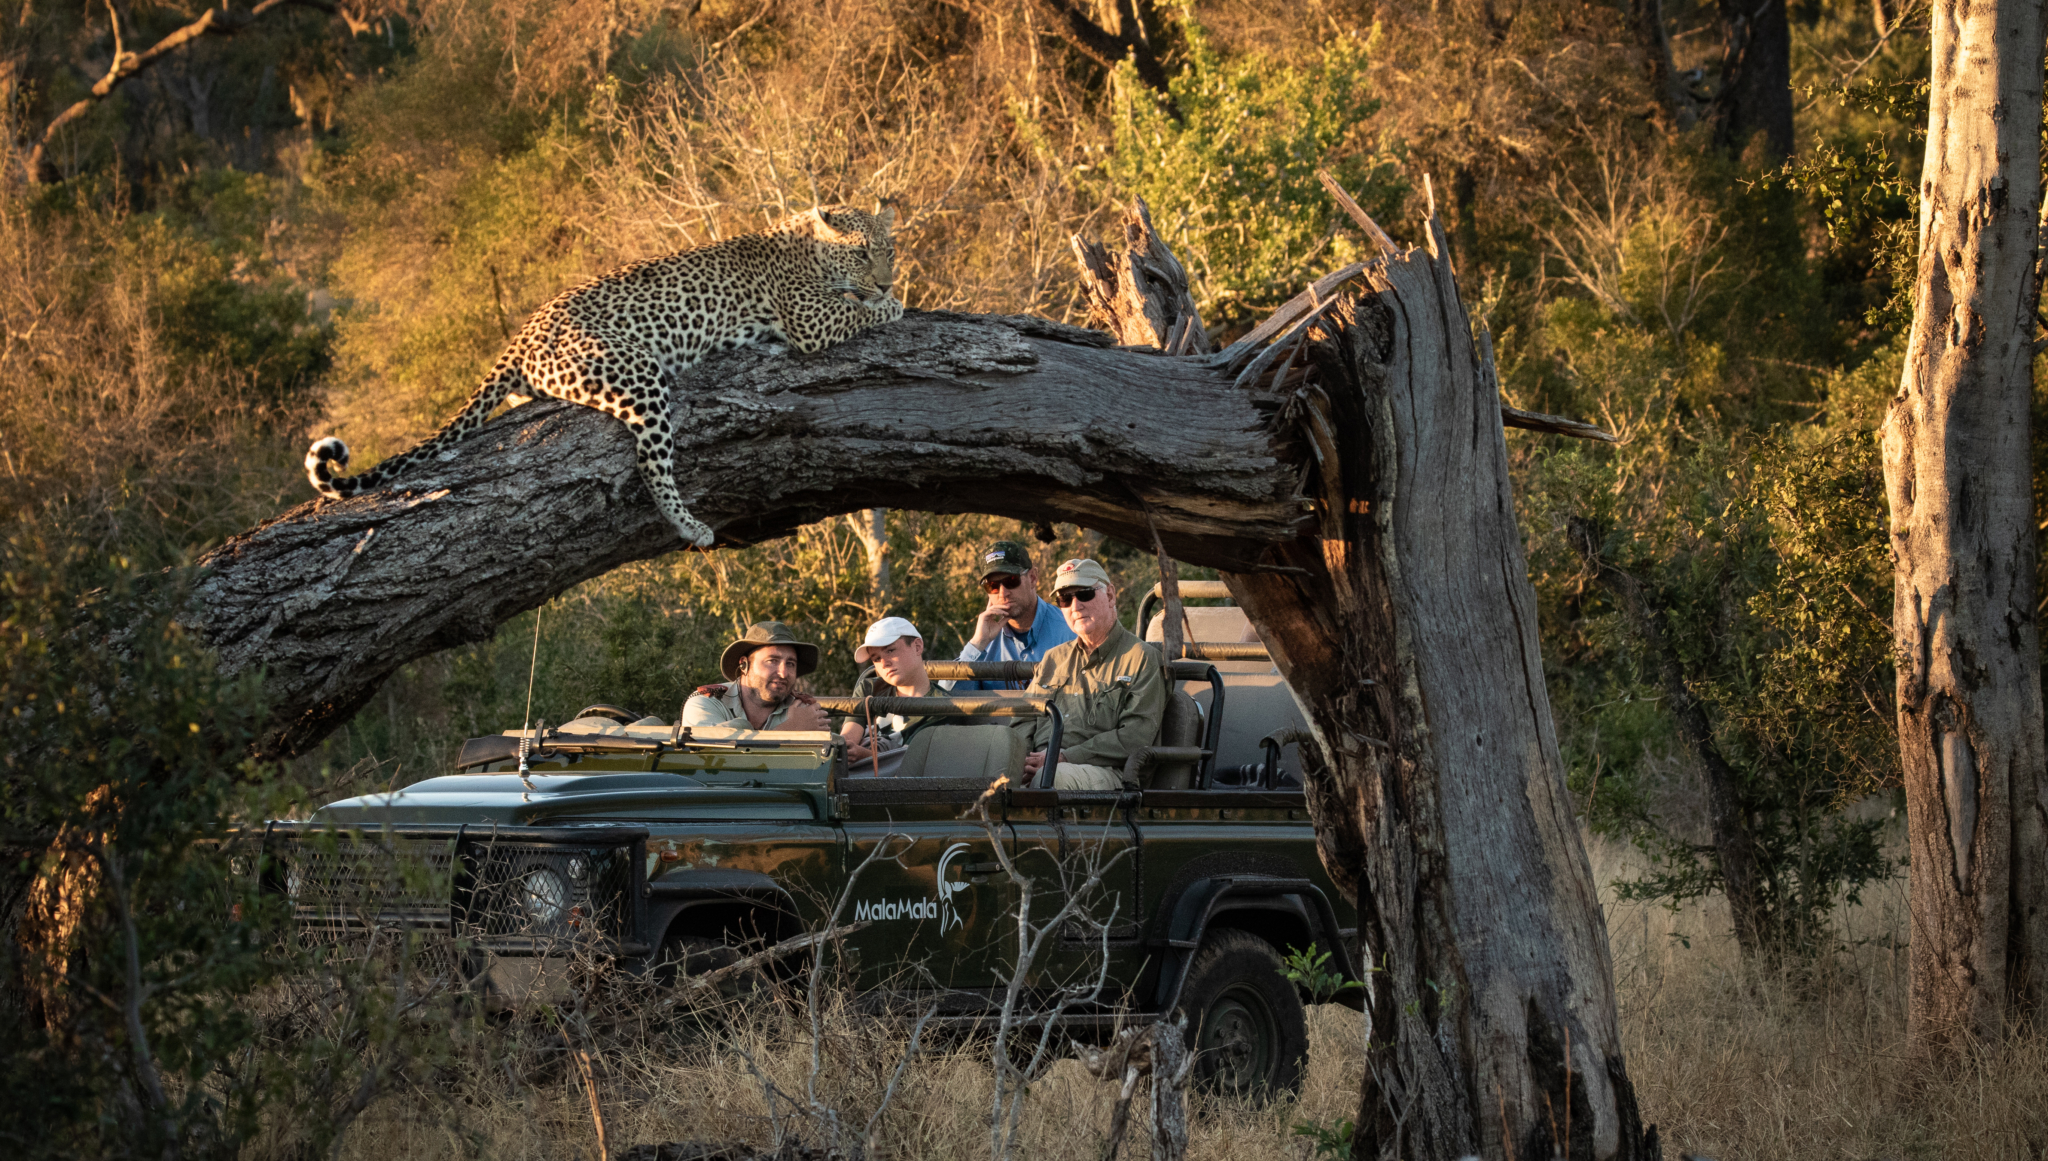 Luipaard spotten tijdens privé safari in Zuid-Afrika - Fotocredit: MalaMala